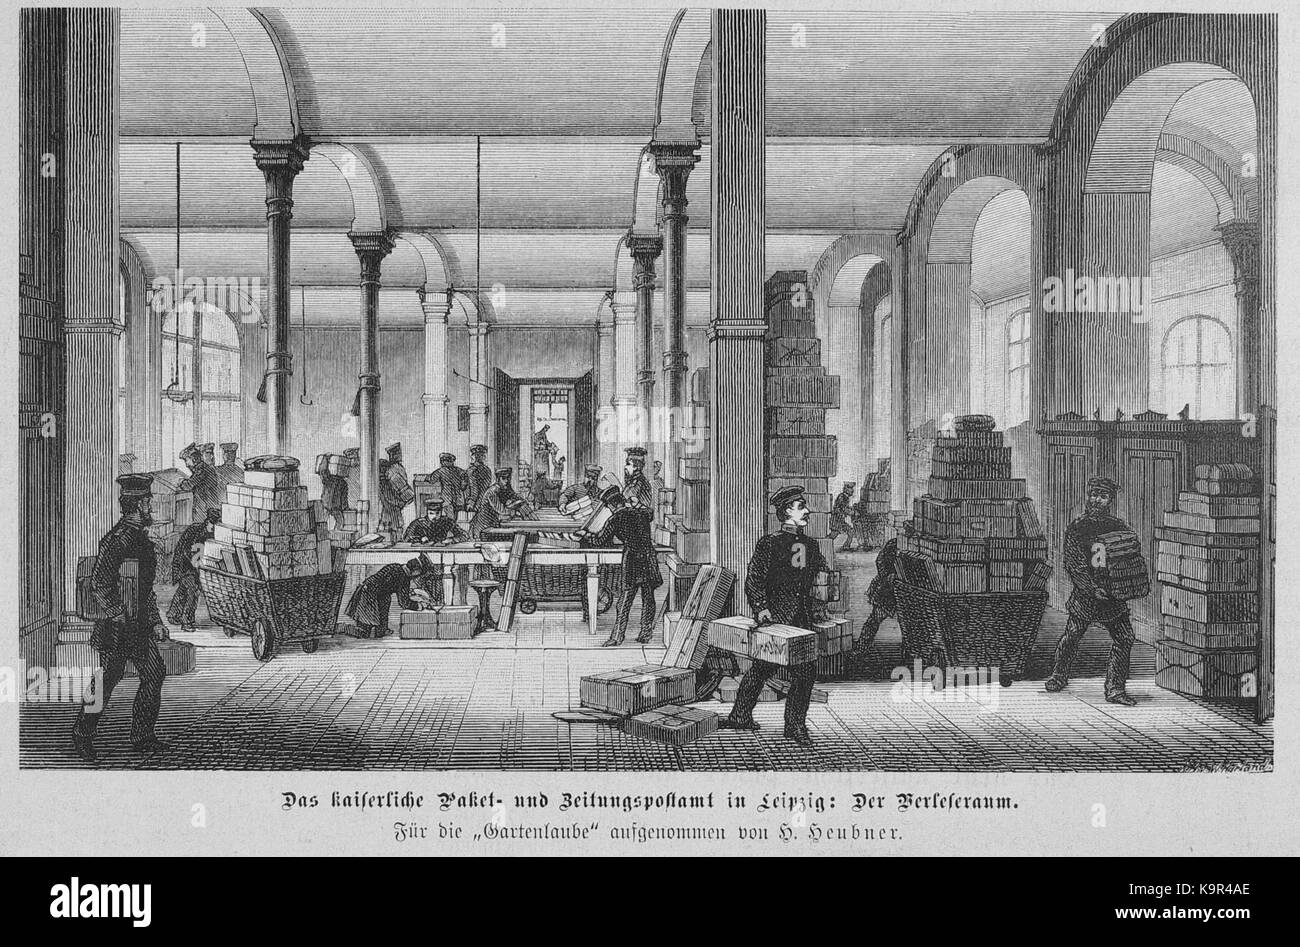 Paket  und Zeitunspostamt Leipzig Paketsortier  bzw. Verlesesaal (Die Gartenlaube (1881), S. 412) Stock Photo